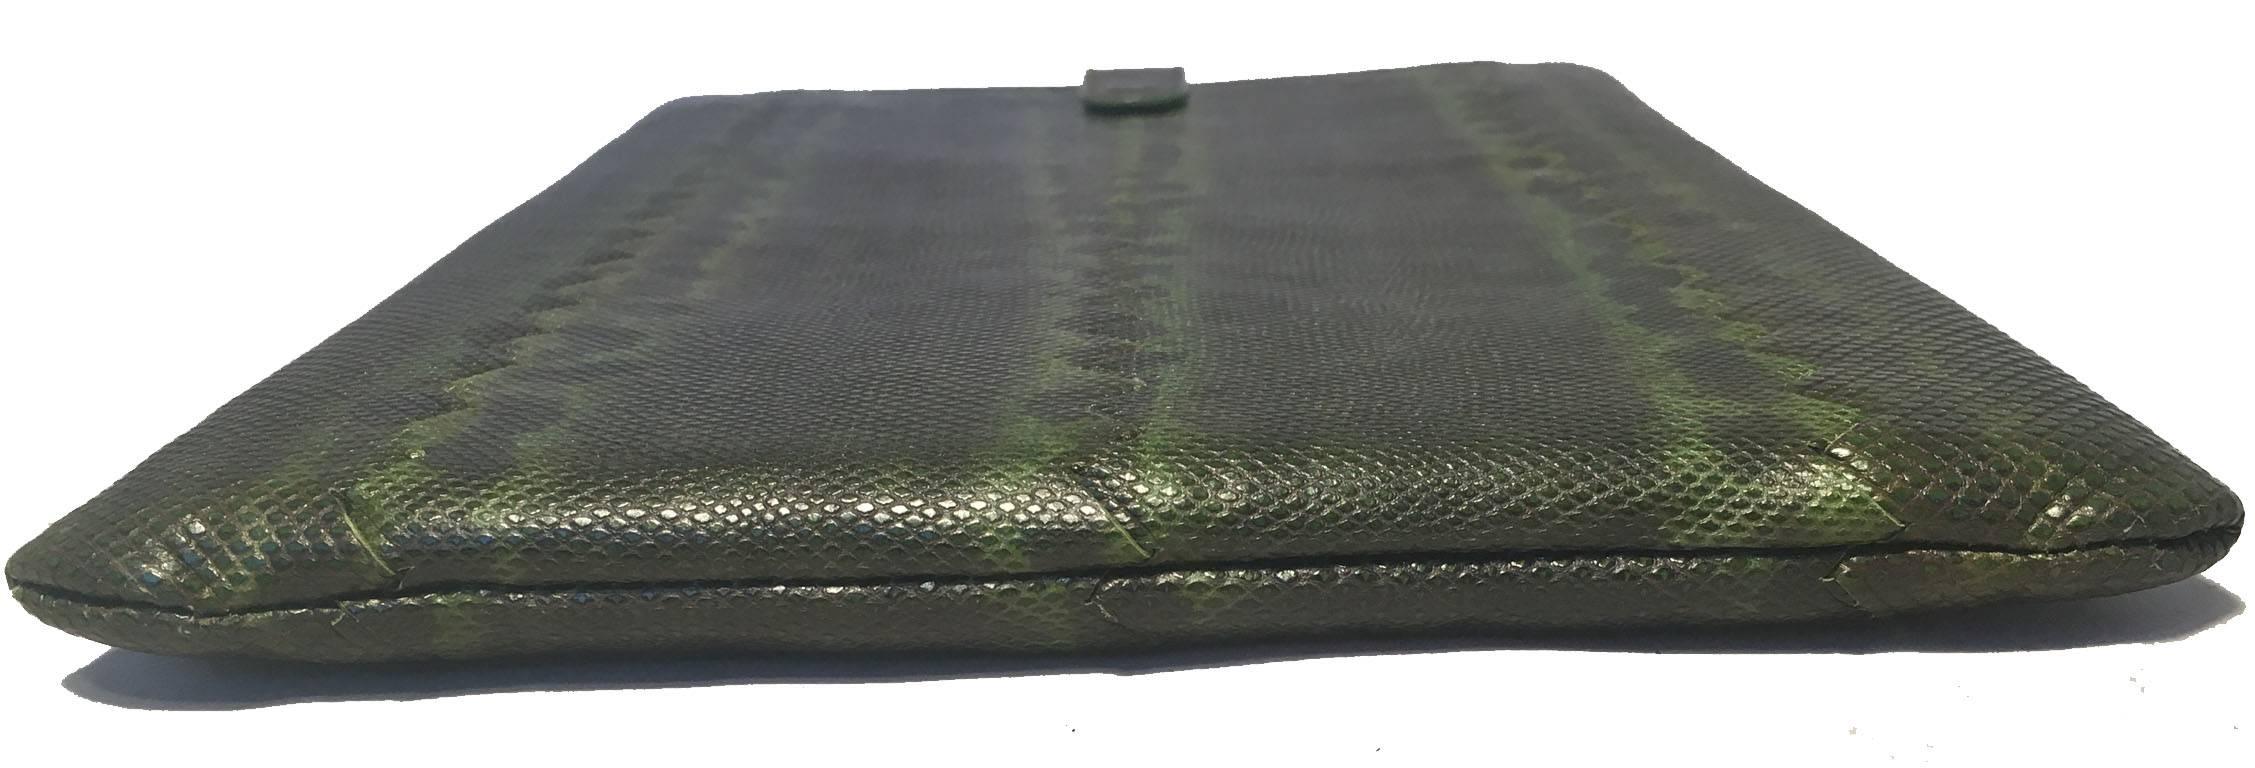 Black Bottega Veneta Green Lizard IPad Case  For Sale